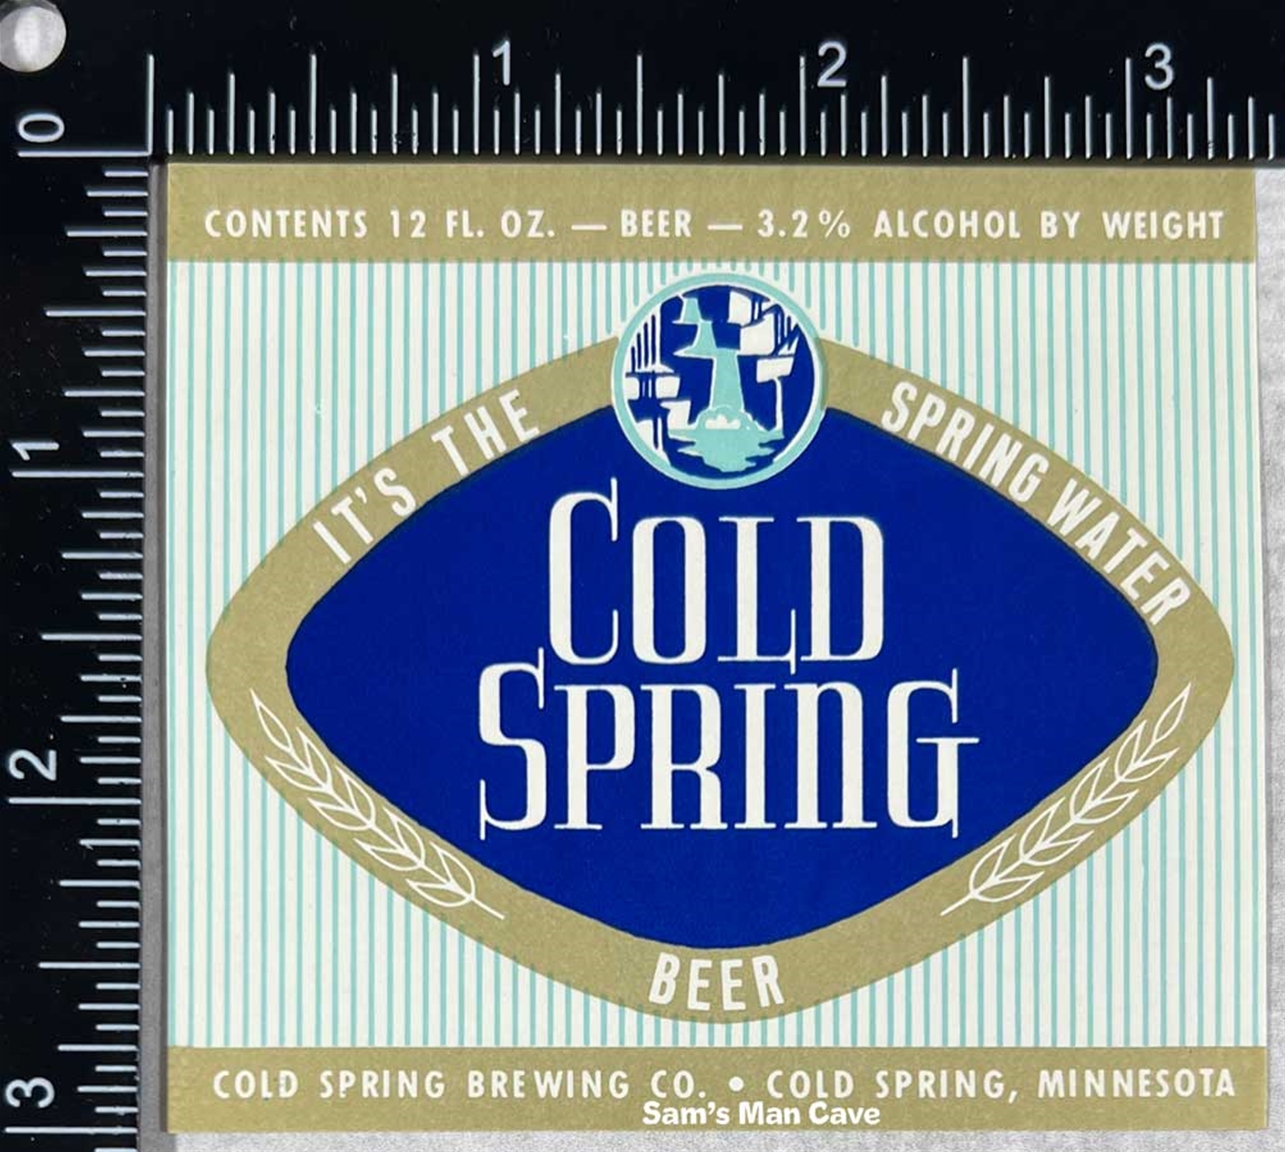 Cold Spring Beer Label